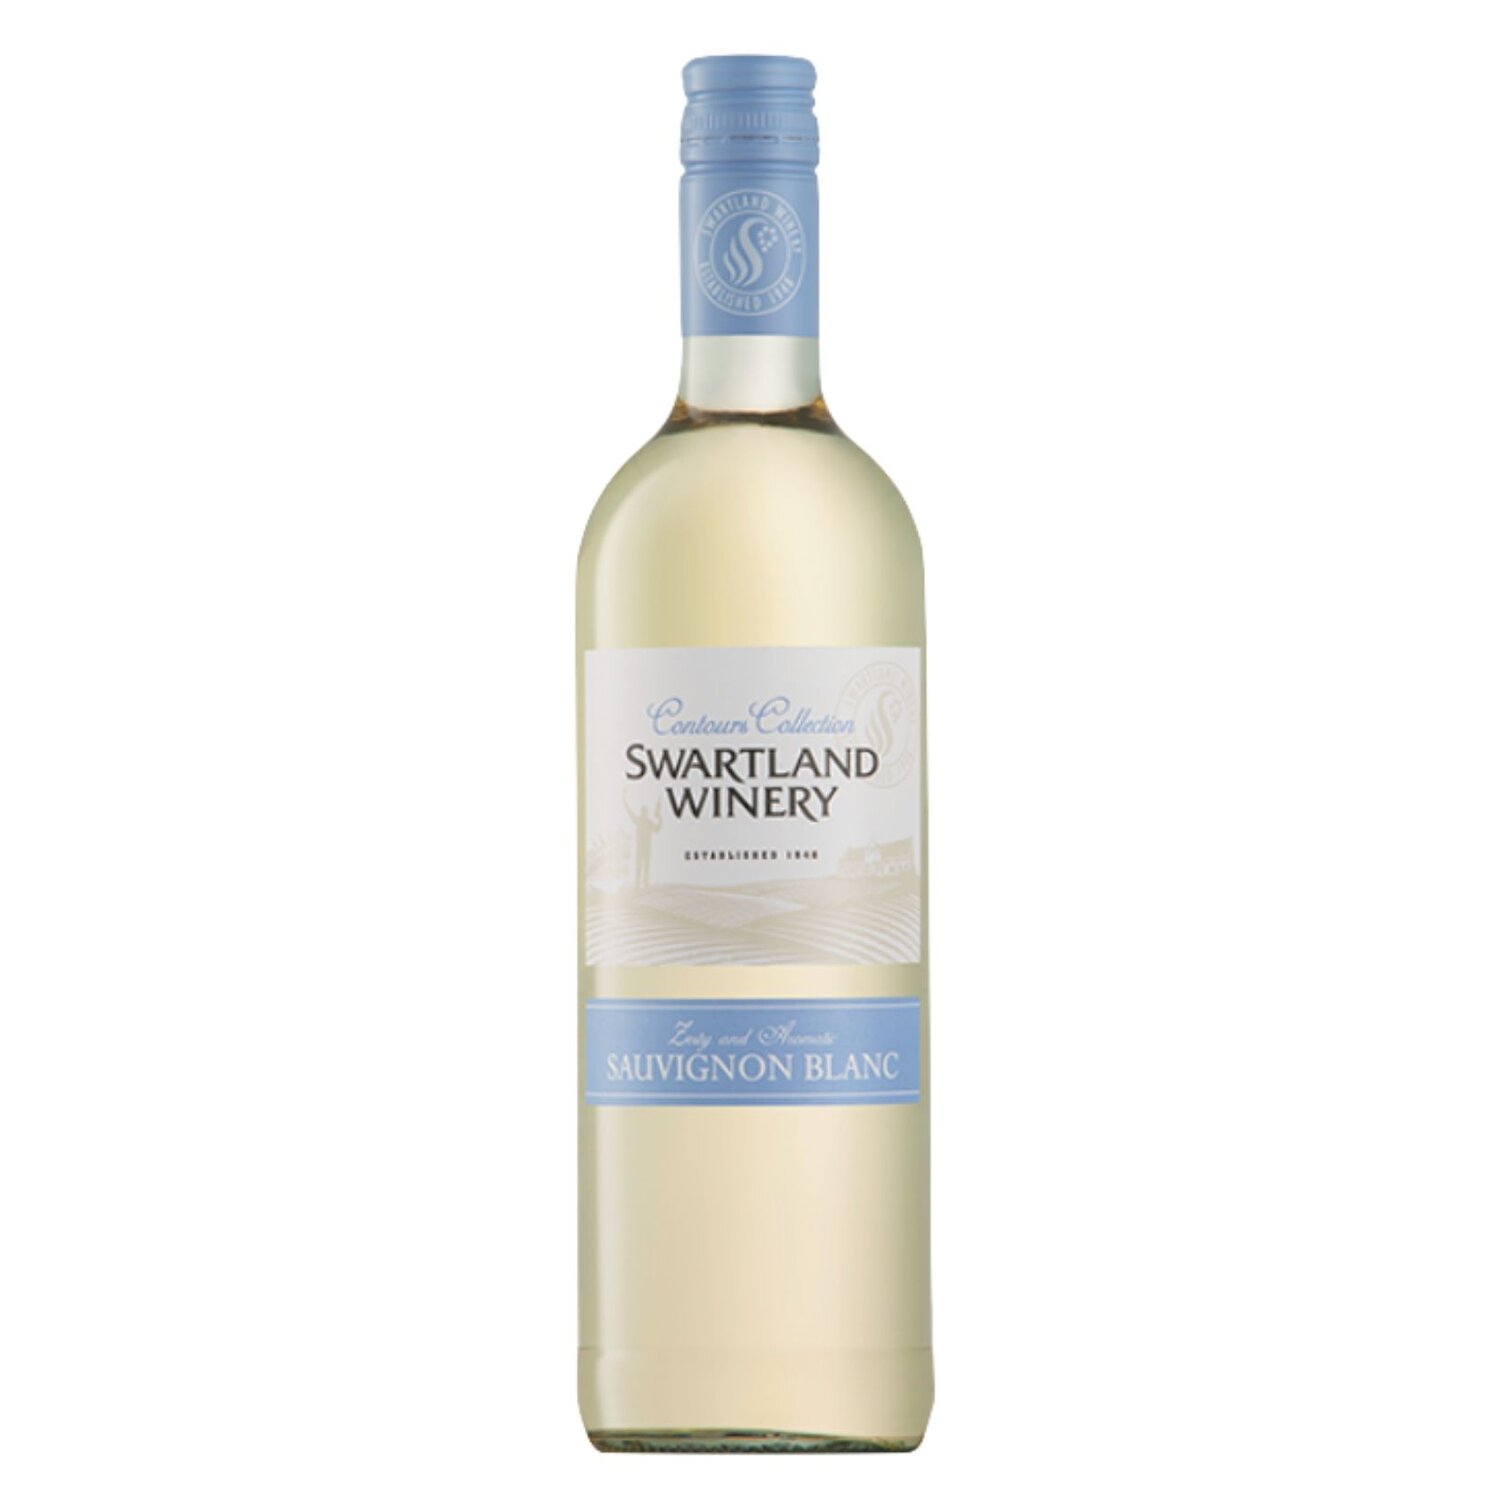 2021 Contours Collection Sauvignon Blanc $18.95Black Oak Cabernet